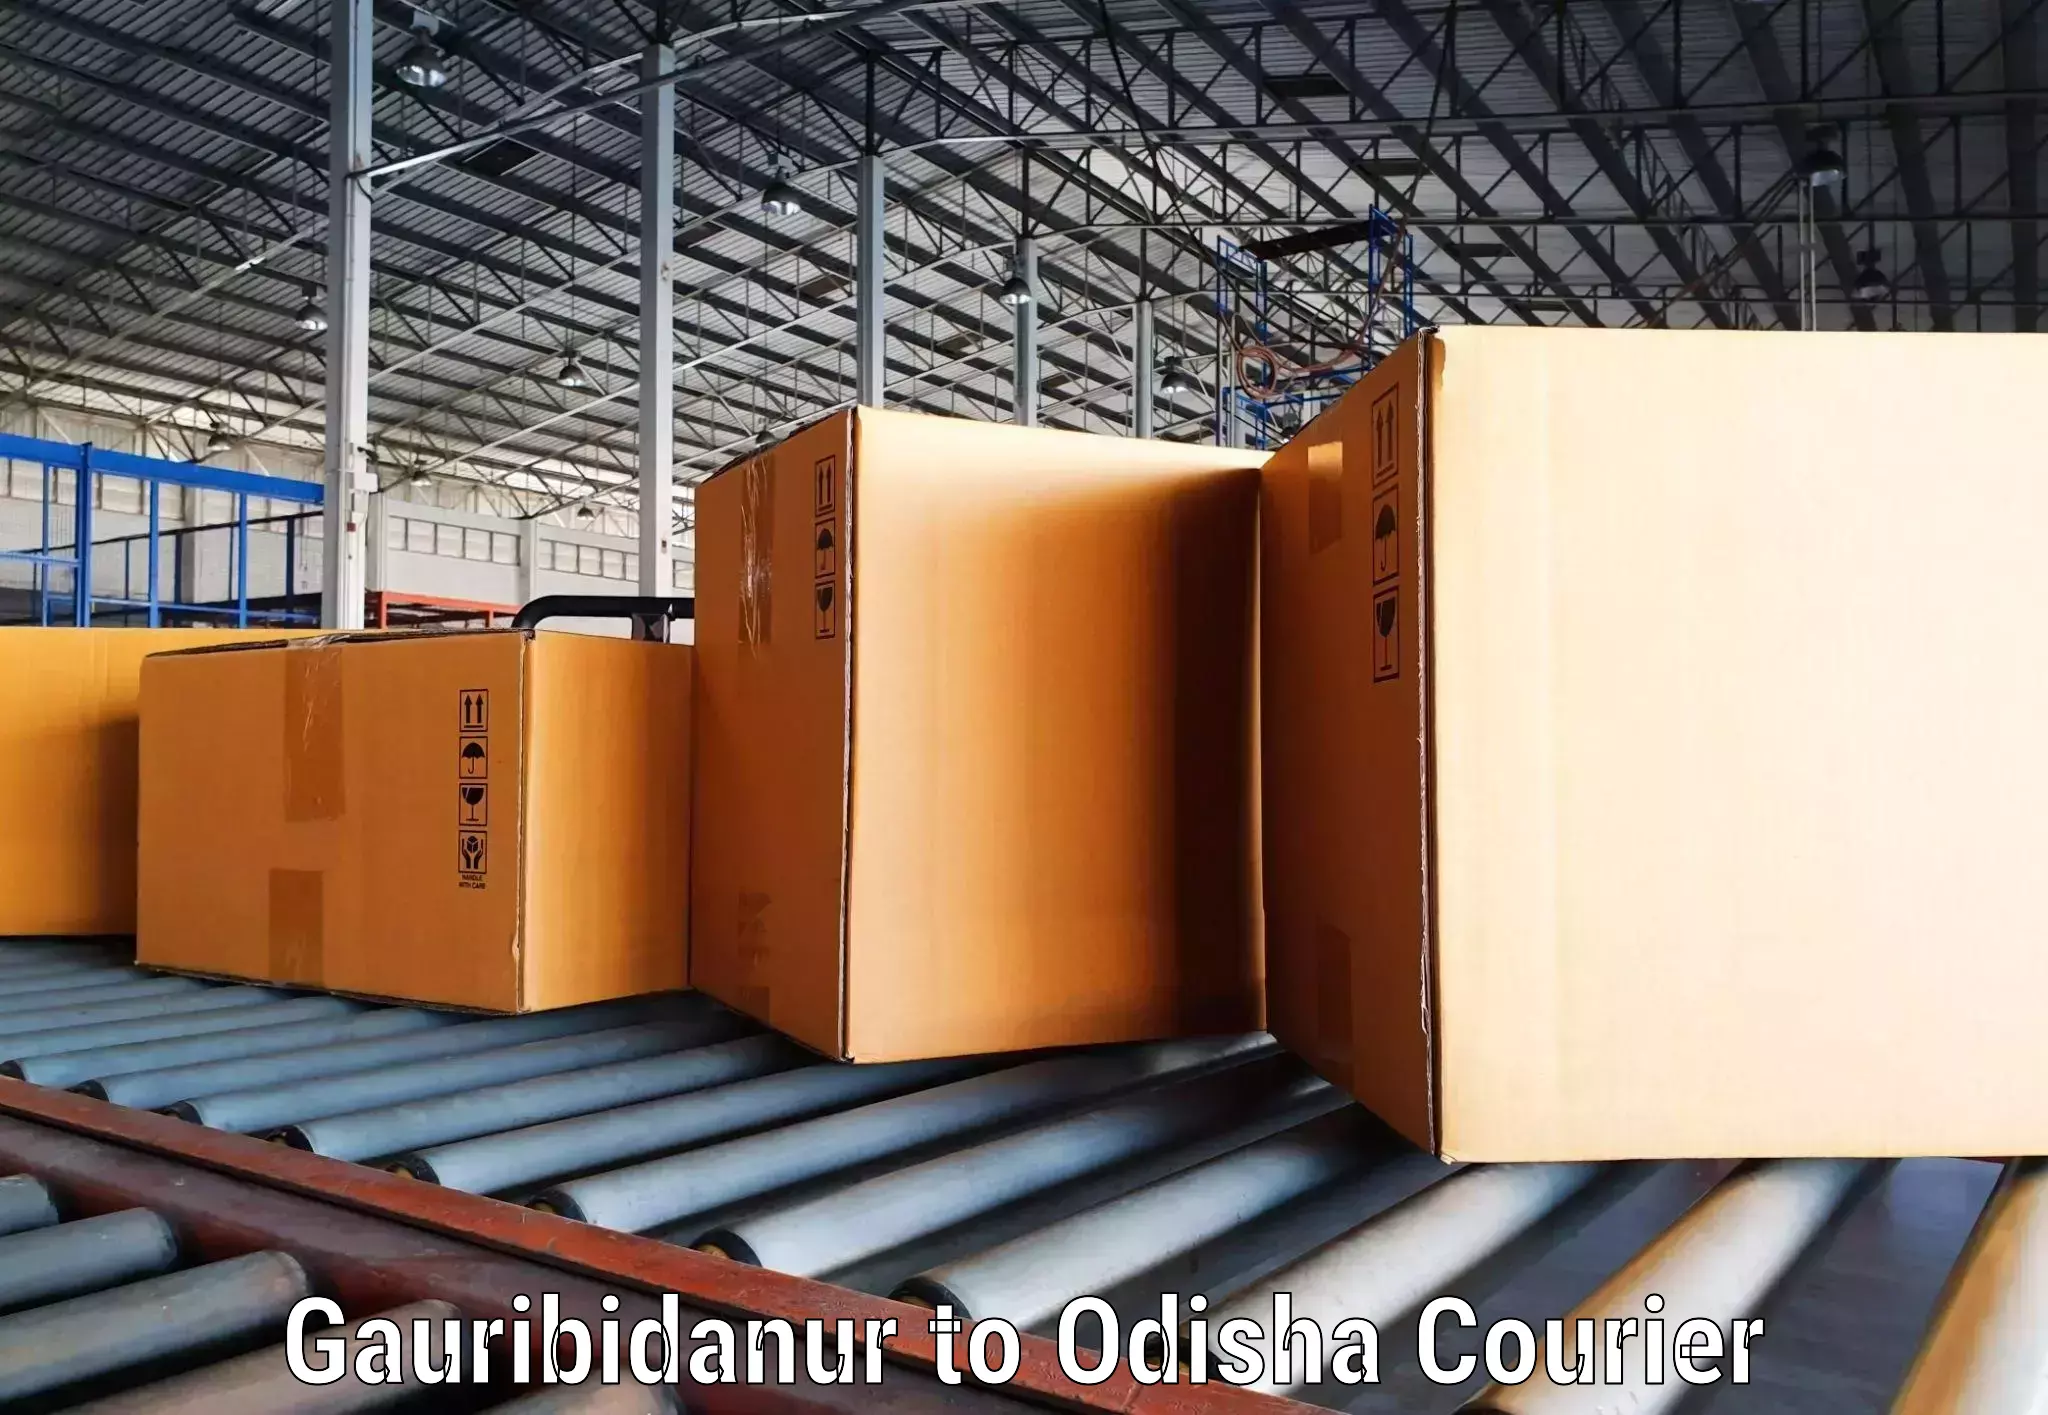 Customer-centric shipping Gauribidanur to Chandinchowk